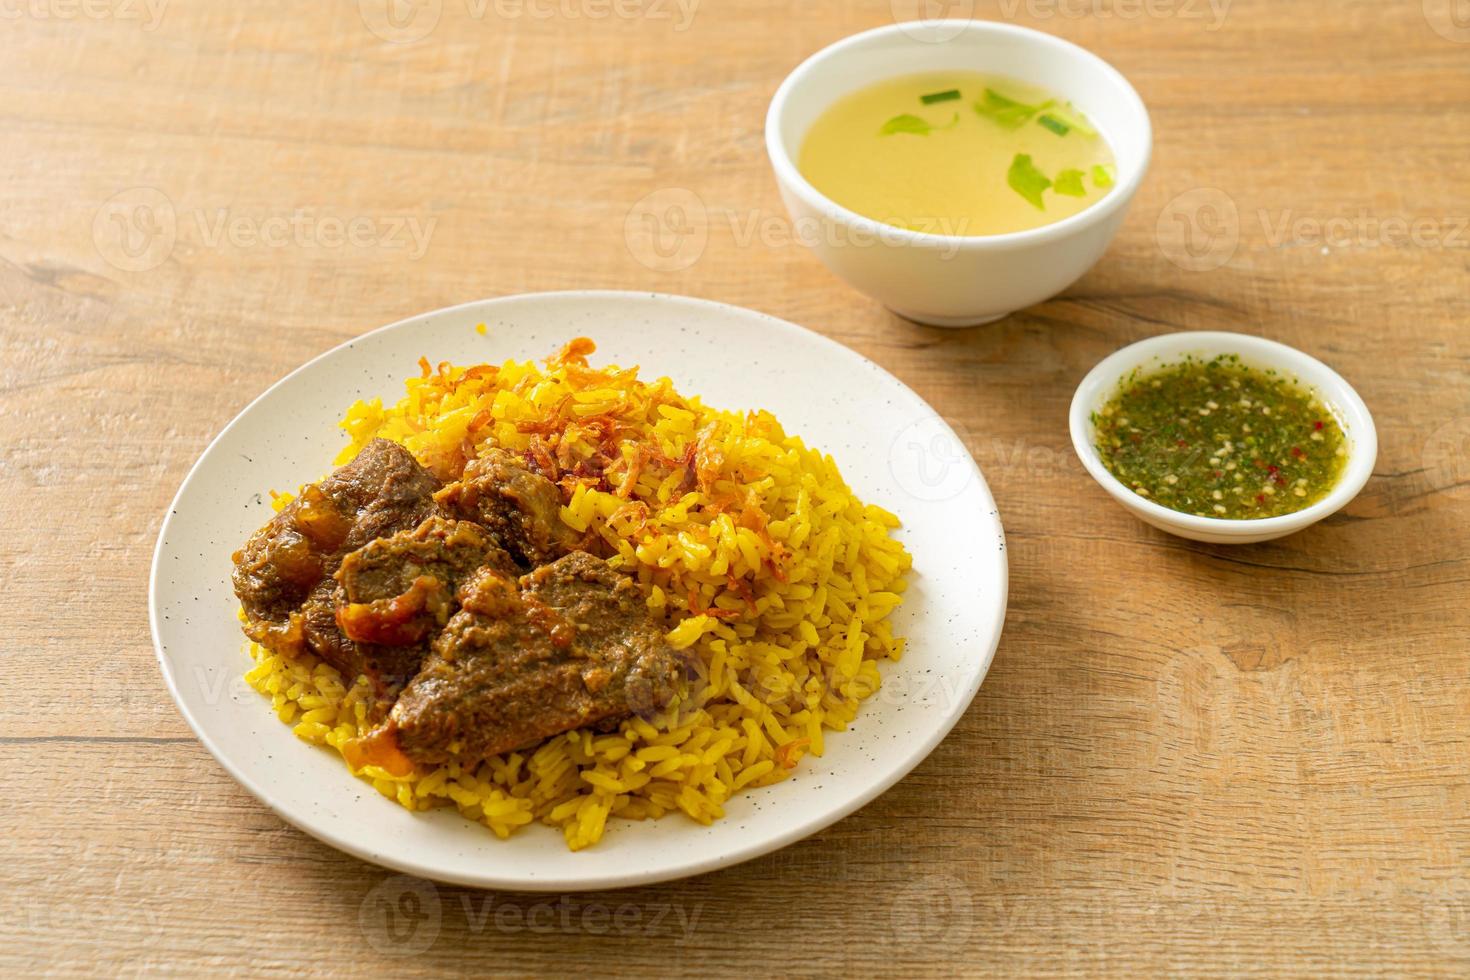 biryani di manzo o riso al curry e manzo - versione thai-musulmana del biryani indiano, con riso giallo profumato e manzo foto